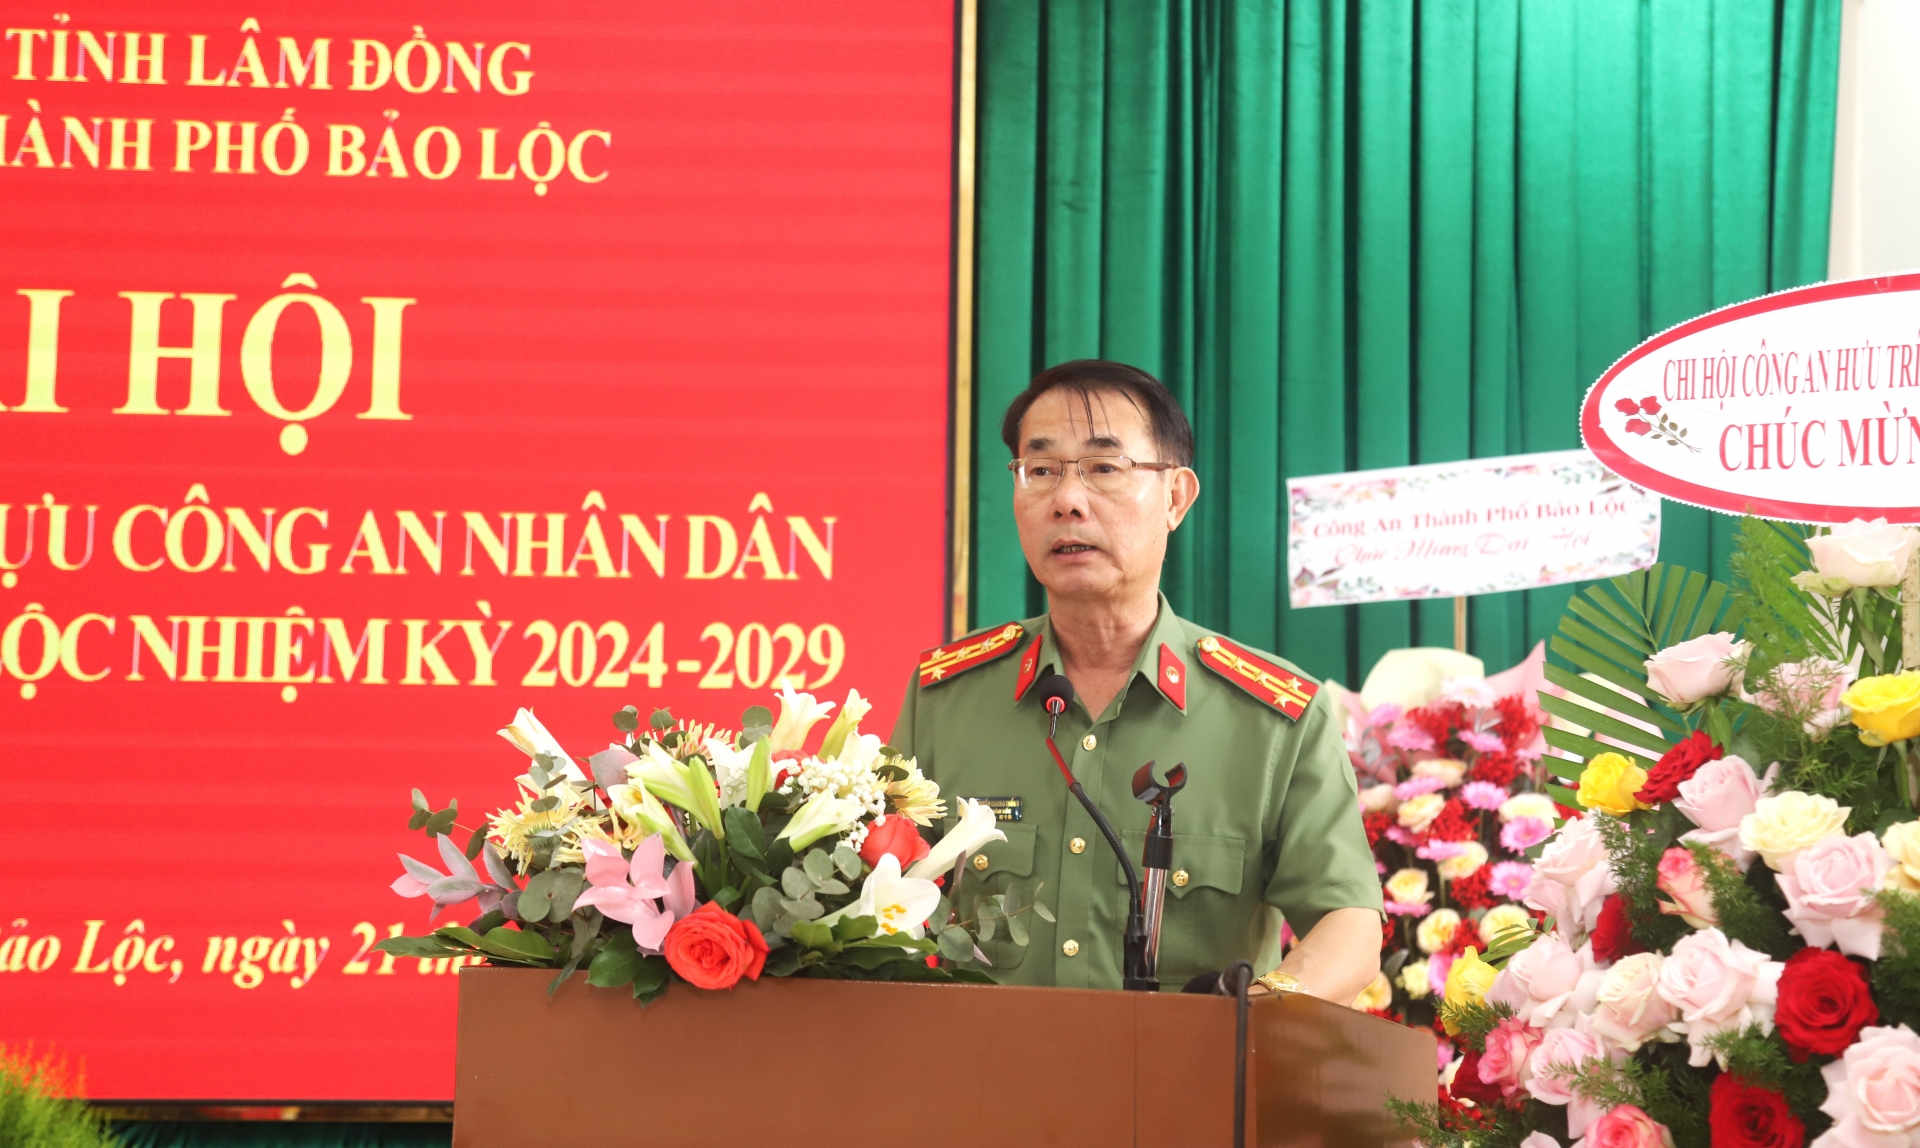 Đại tá Nguyễn Quang Thống - Phó Giám đốc Công an tỉnh Lâm Đồng phát biểu tại Đại hội